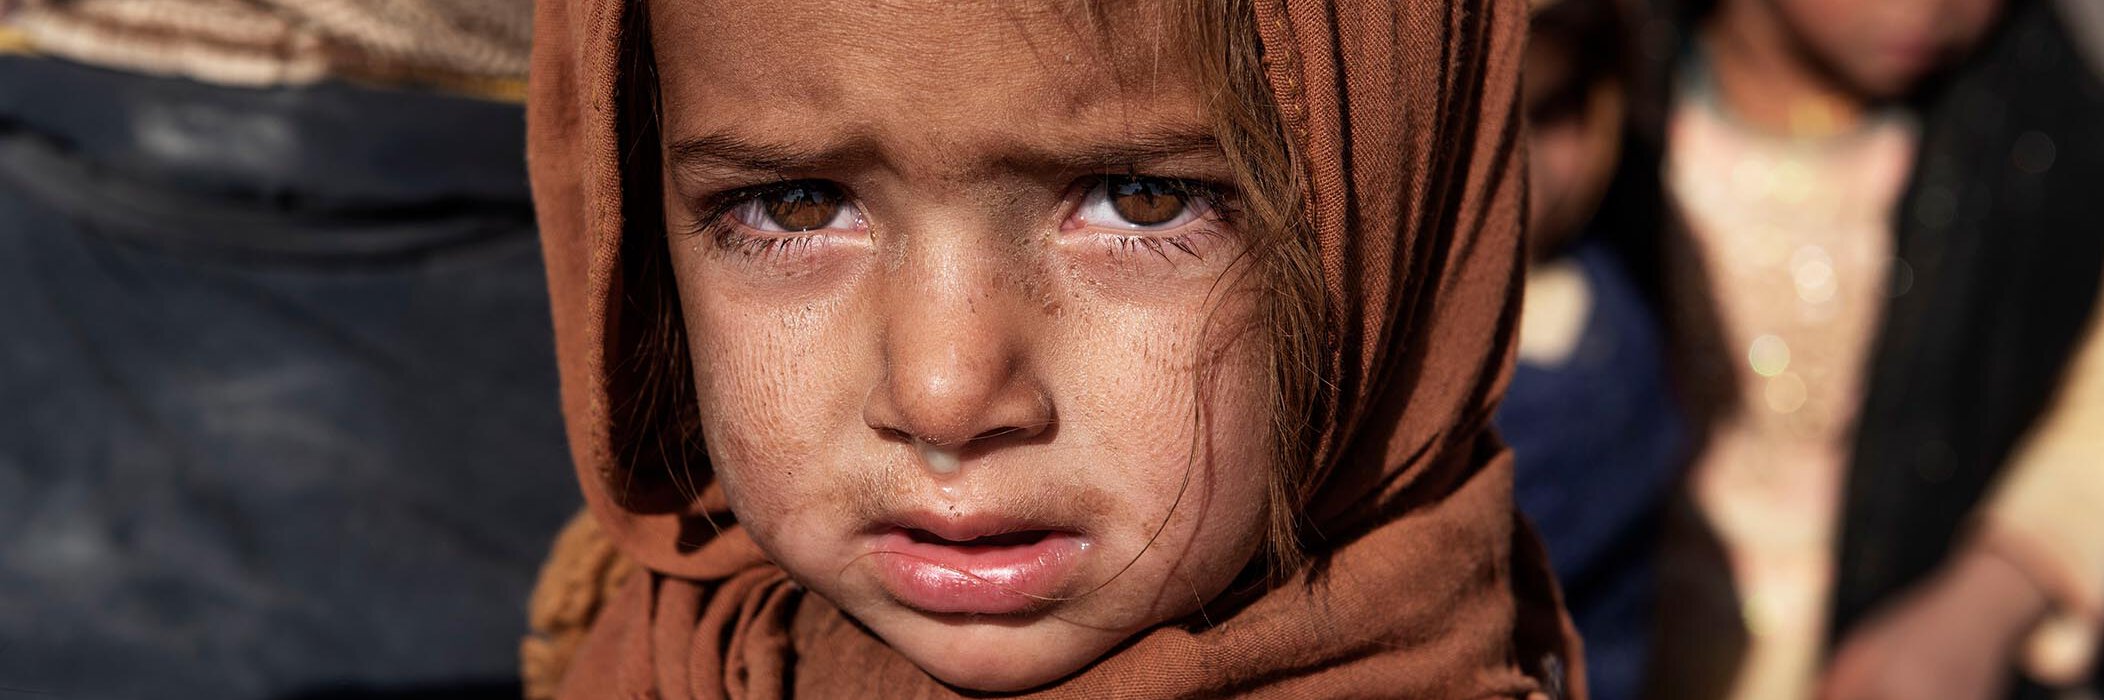 Ein afghanisches Mädchen blickt traurig in die Kamera.